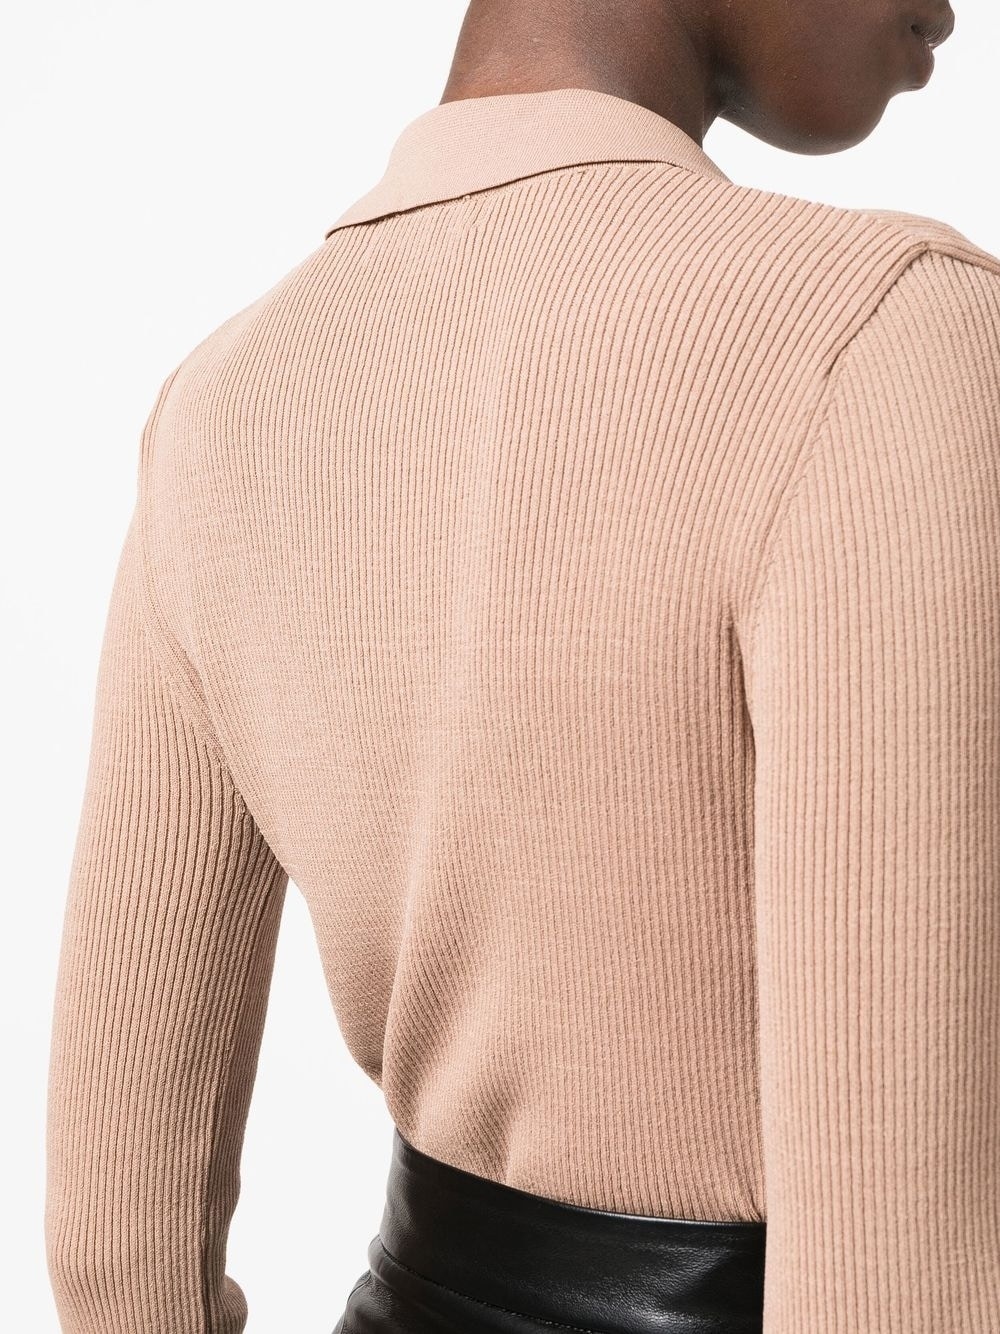 ribbed-knit notched-collar shirt - 5